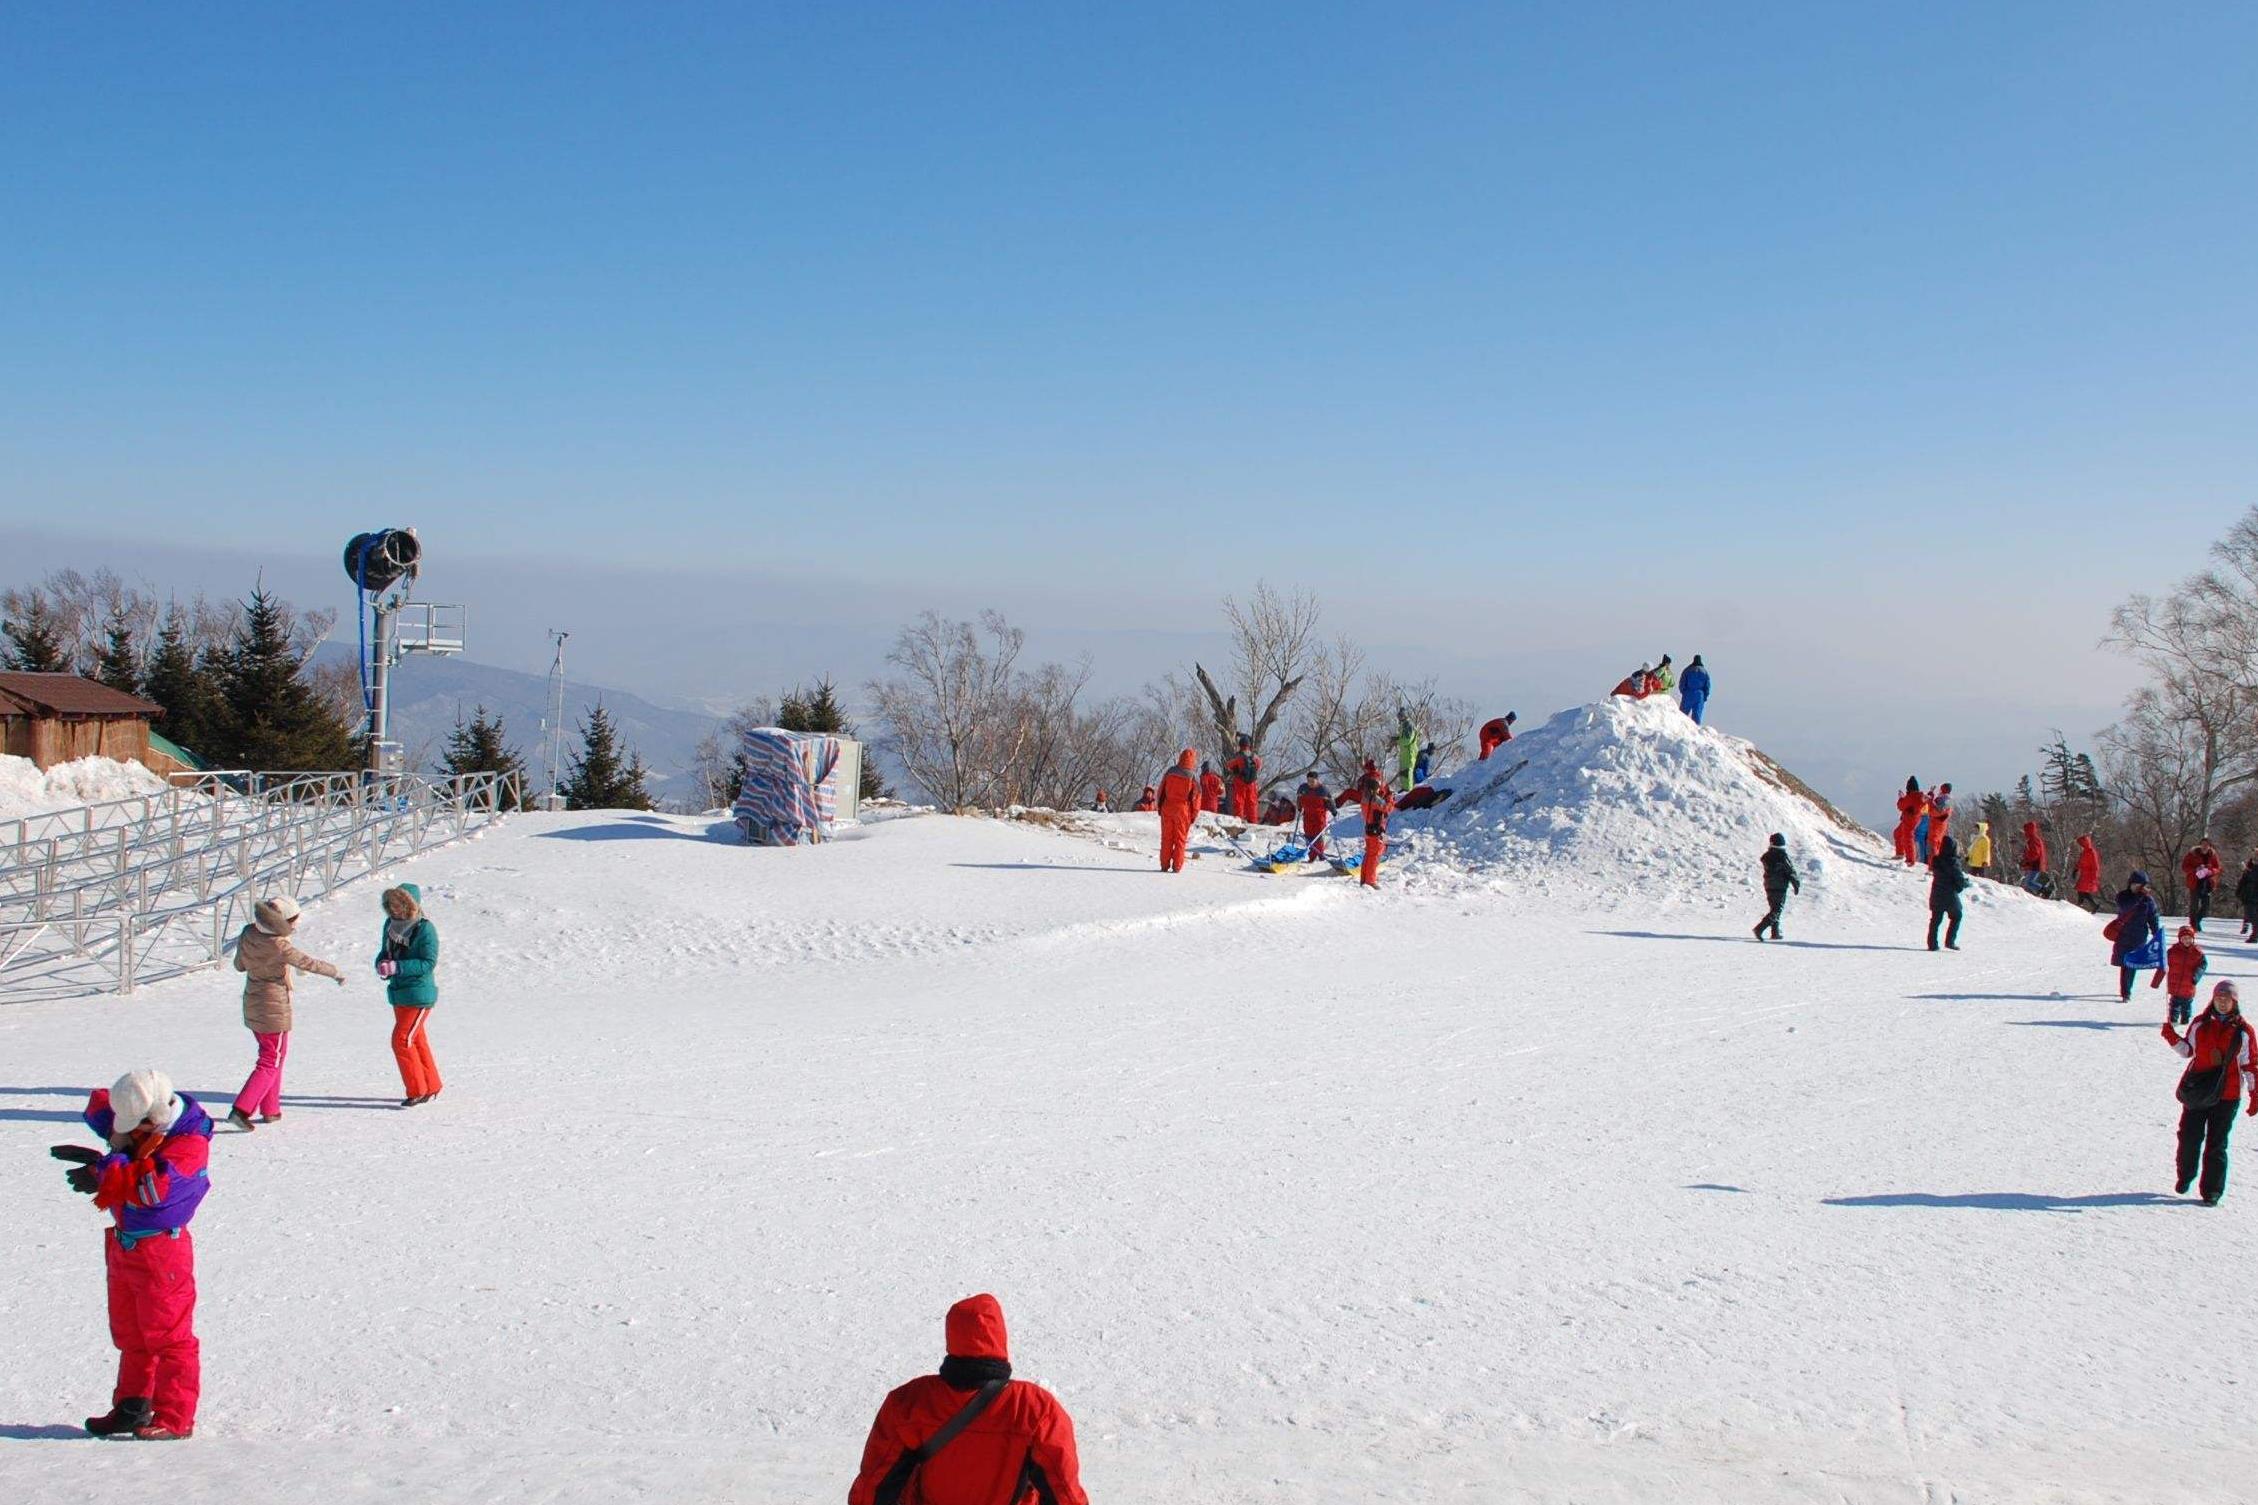 亚布力好汉泊滑雪场[]_门票预订_北国游旅游网